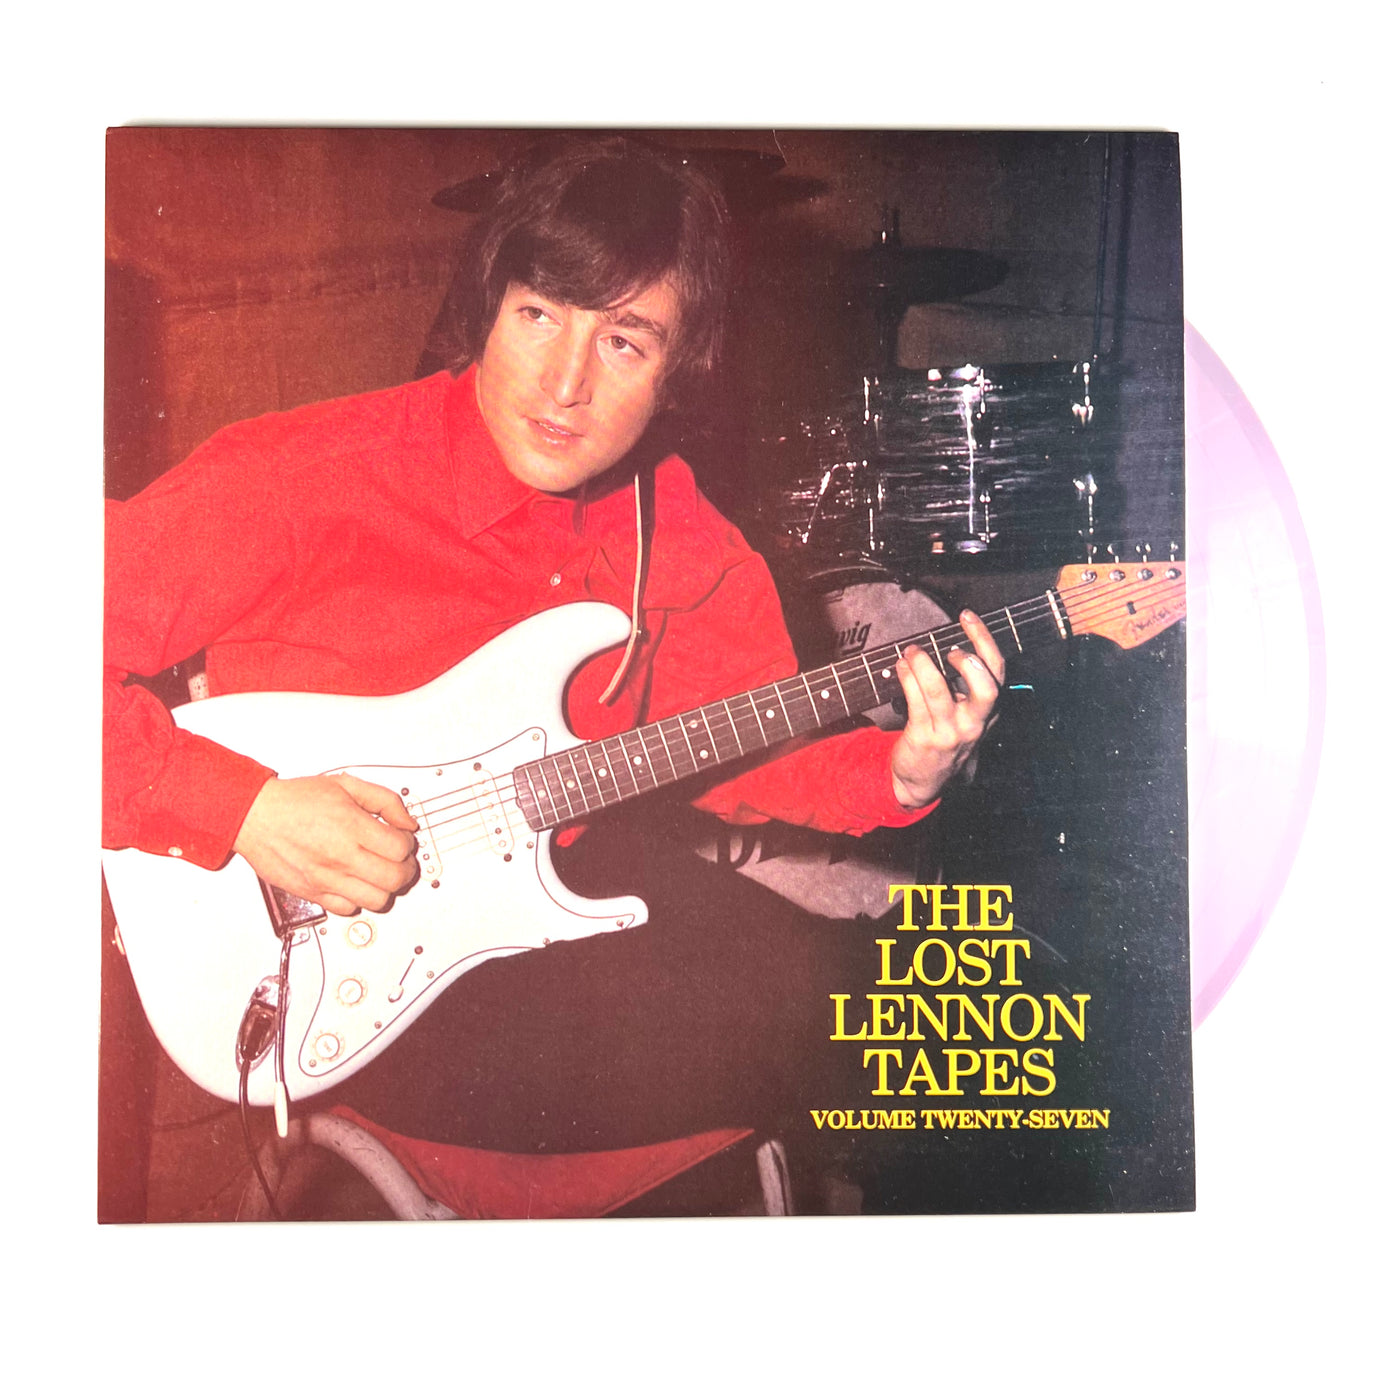 John Lennon - The Lost Lennon Tapes Volume Twenty-Seven